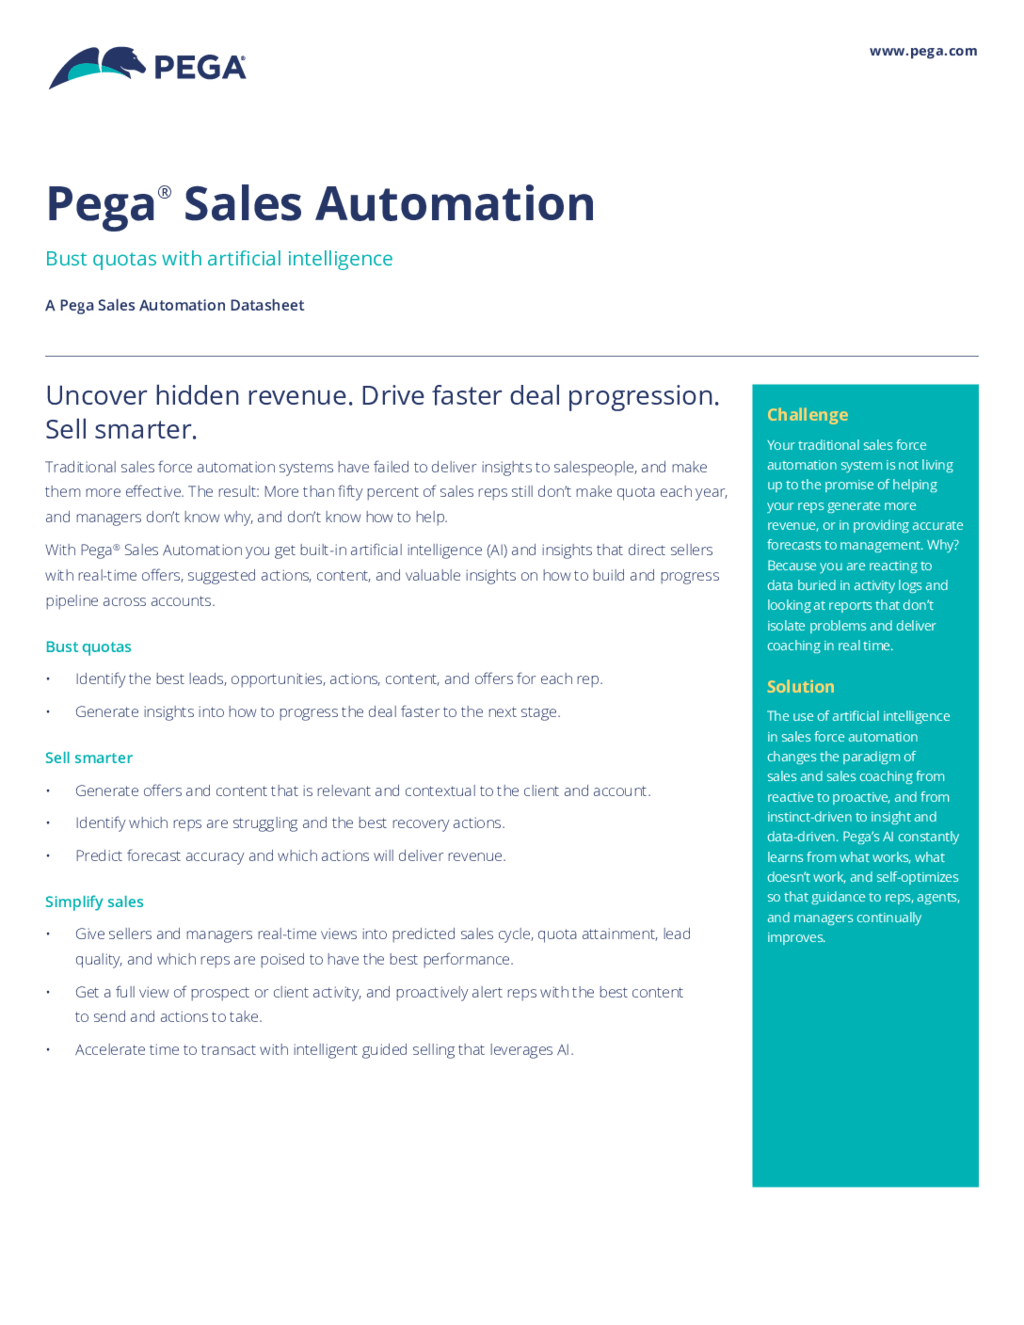 Pega Sales Automation and AI